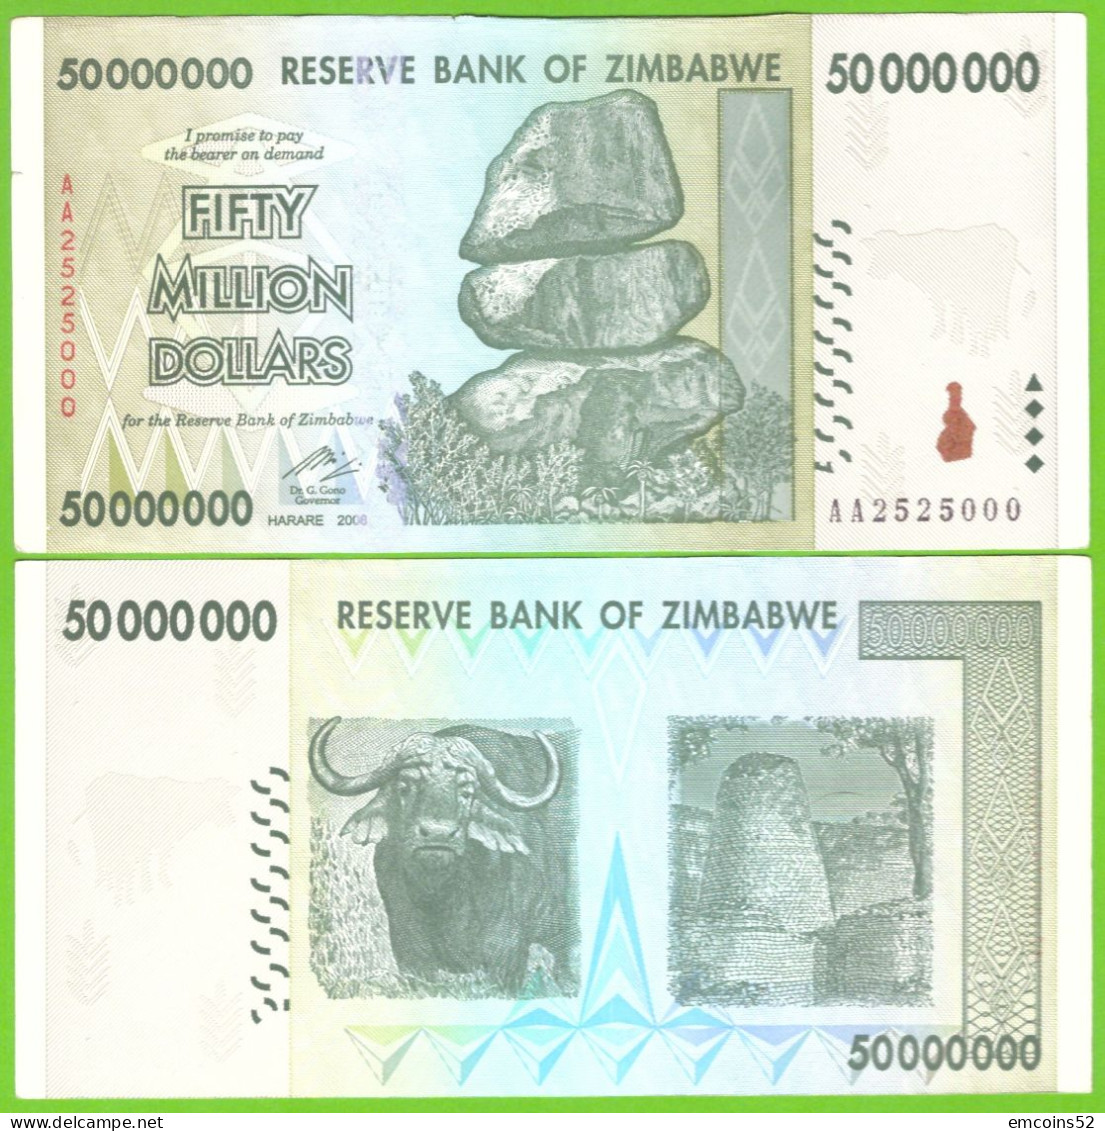 ZIMBABWE 50000000 DOLLARS 2008  P-79 XF - Zimbabwe